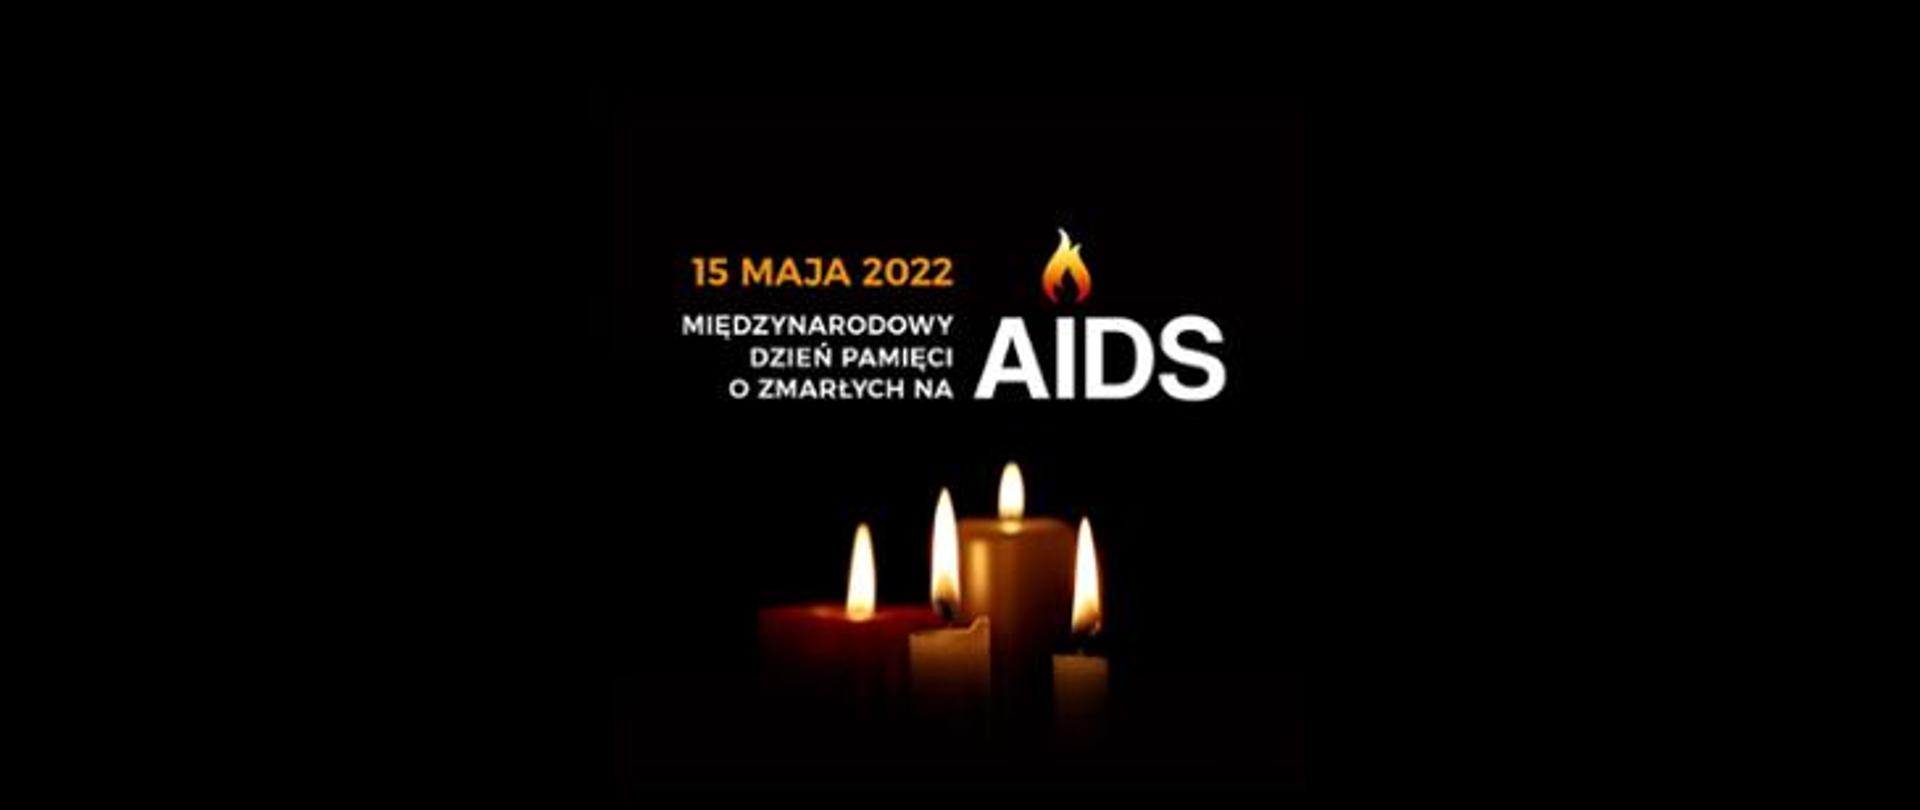 15 maja 2022 - Międzynarodowy Dzień Pamięci o Zmarłych na AIDS